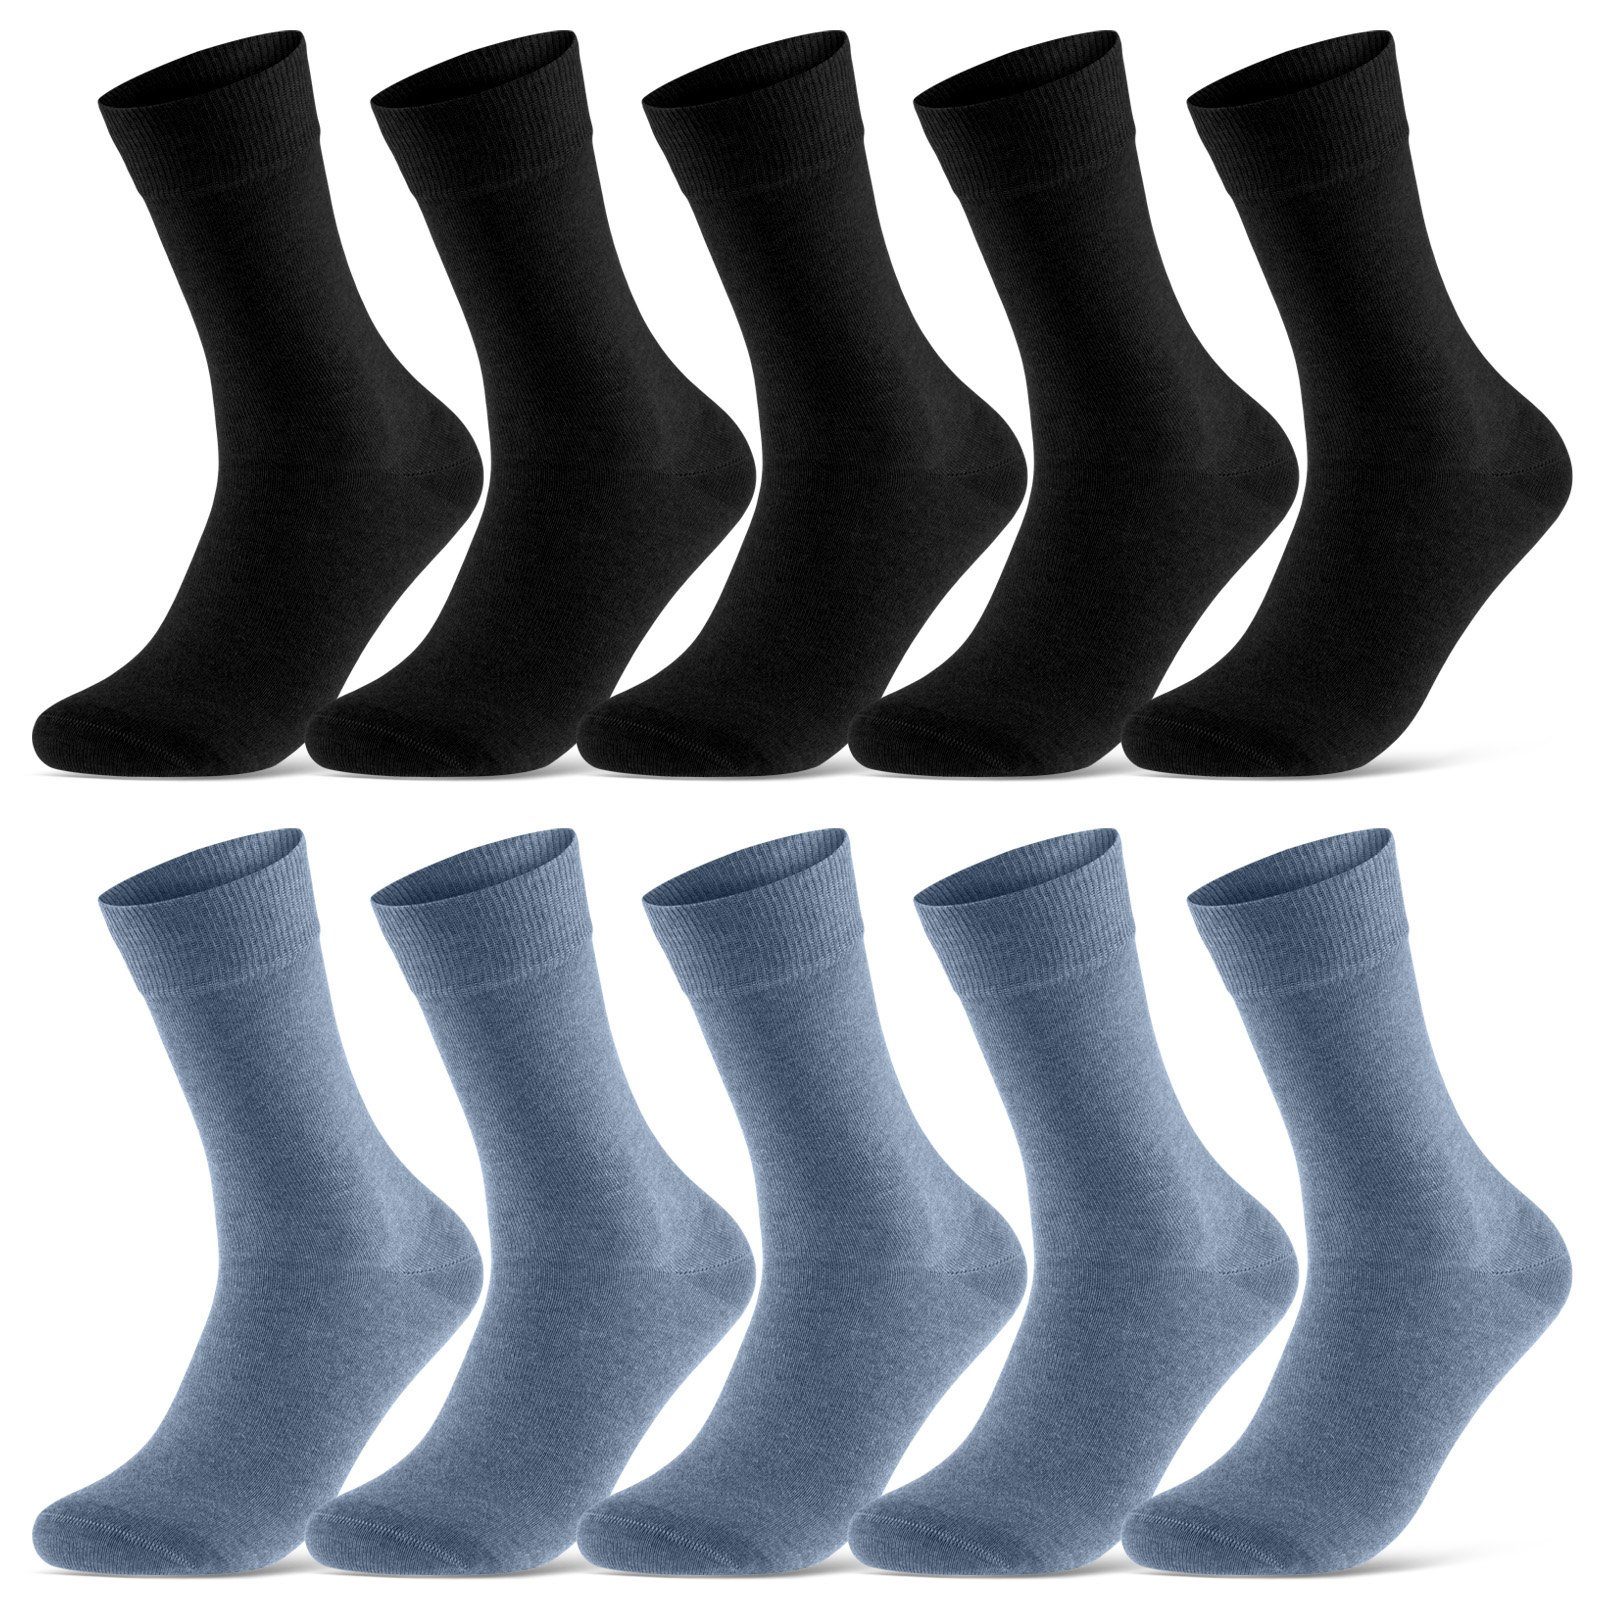 sockenkauf24 Socken 10 Paar Damen & Herren Socken Business Socken Baumwolle (Schwarz/Jeans, 43-46) mit Komfortbund (Basicline) - 70201T WP